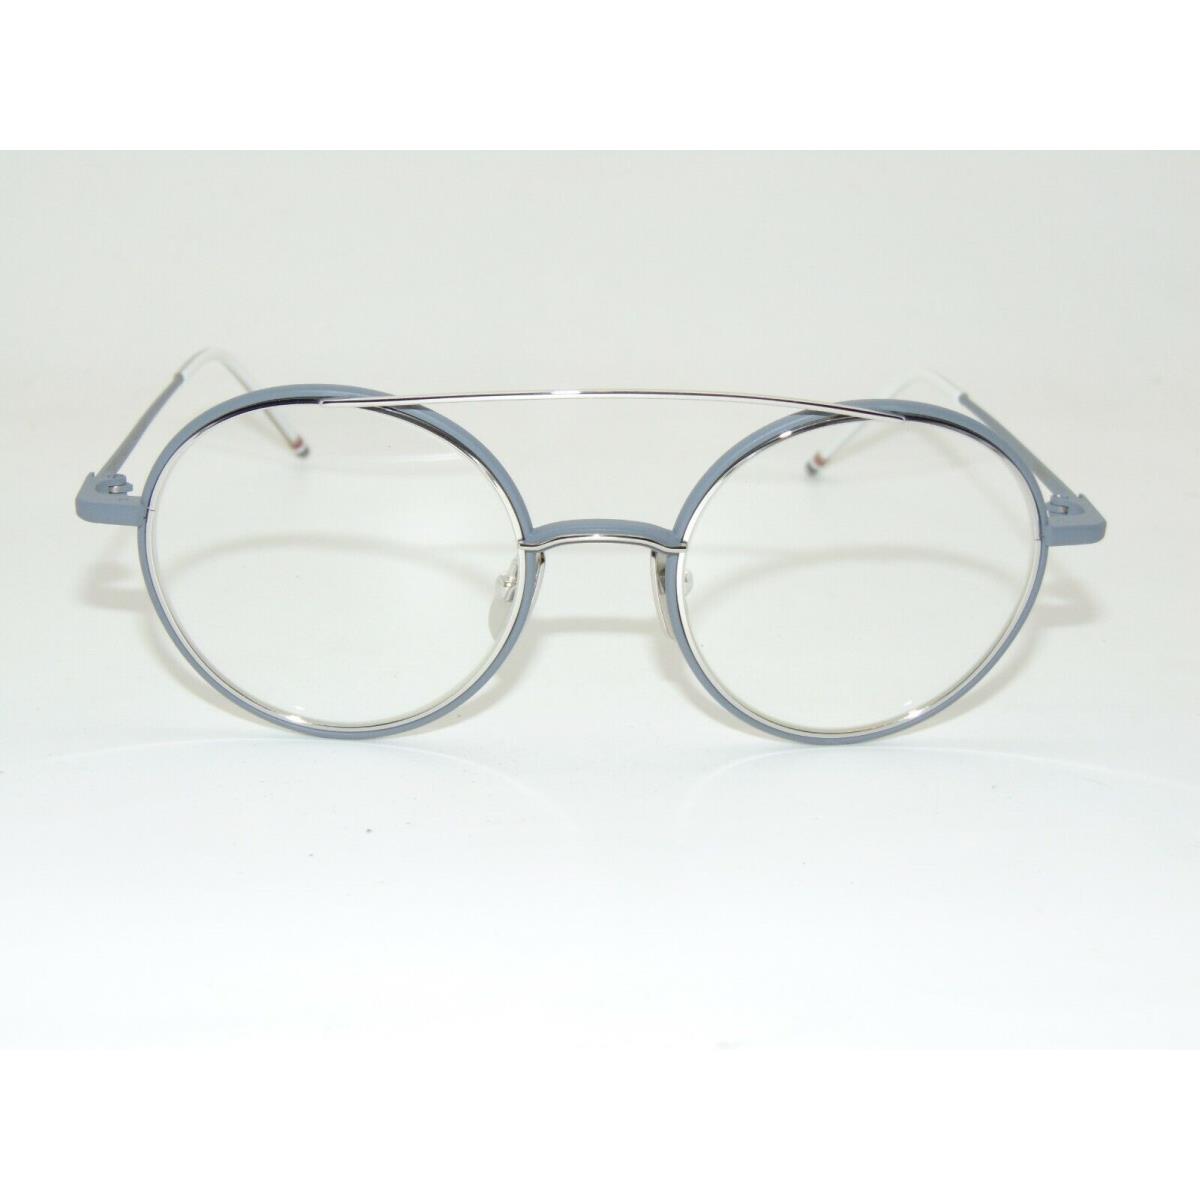 Thom Browne TB-108-B-GRY-SLV Matte Grey/silver 50mm Eyeglasses